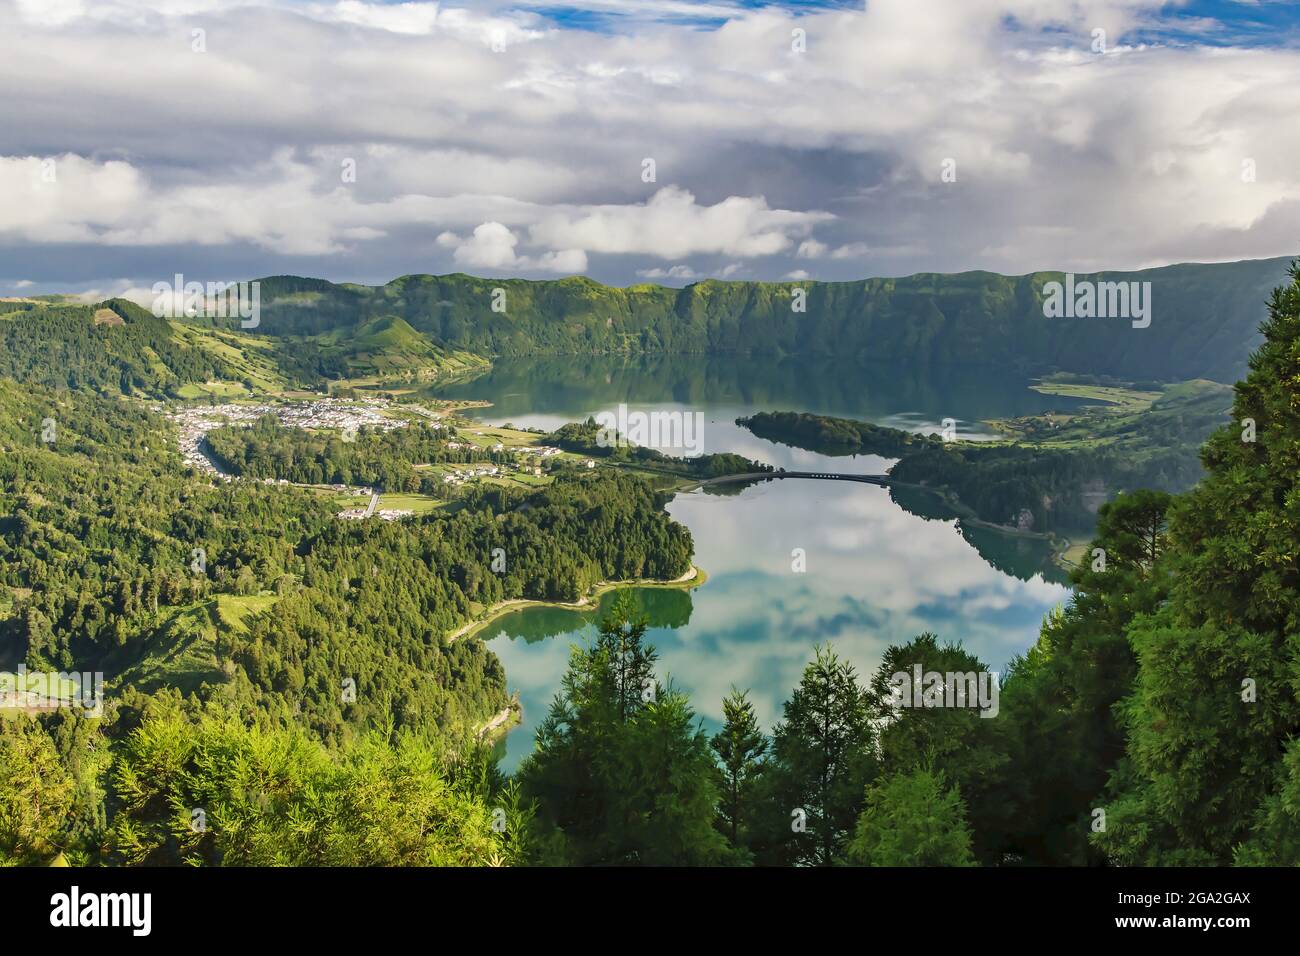 Landschaftlich schöner Blick auf die Seen und die üppige Vegetation der Sete Cidades vom Aussichtspunkt Vista do Rei (King's View), innerhalb der massiven Vulkane... Stockfoto